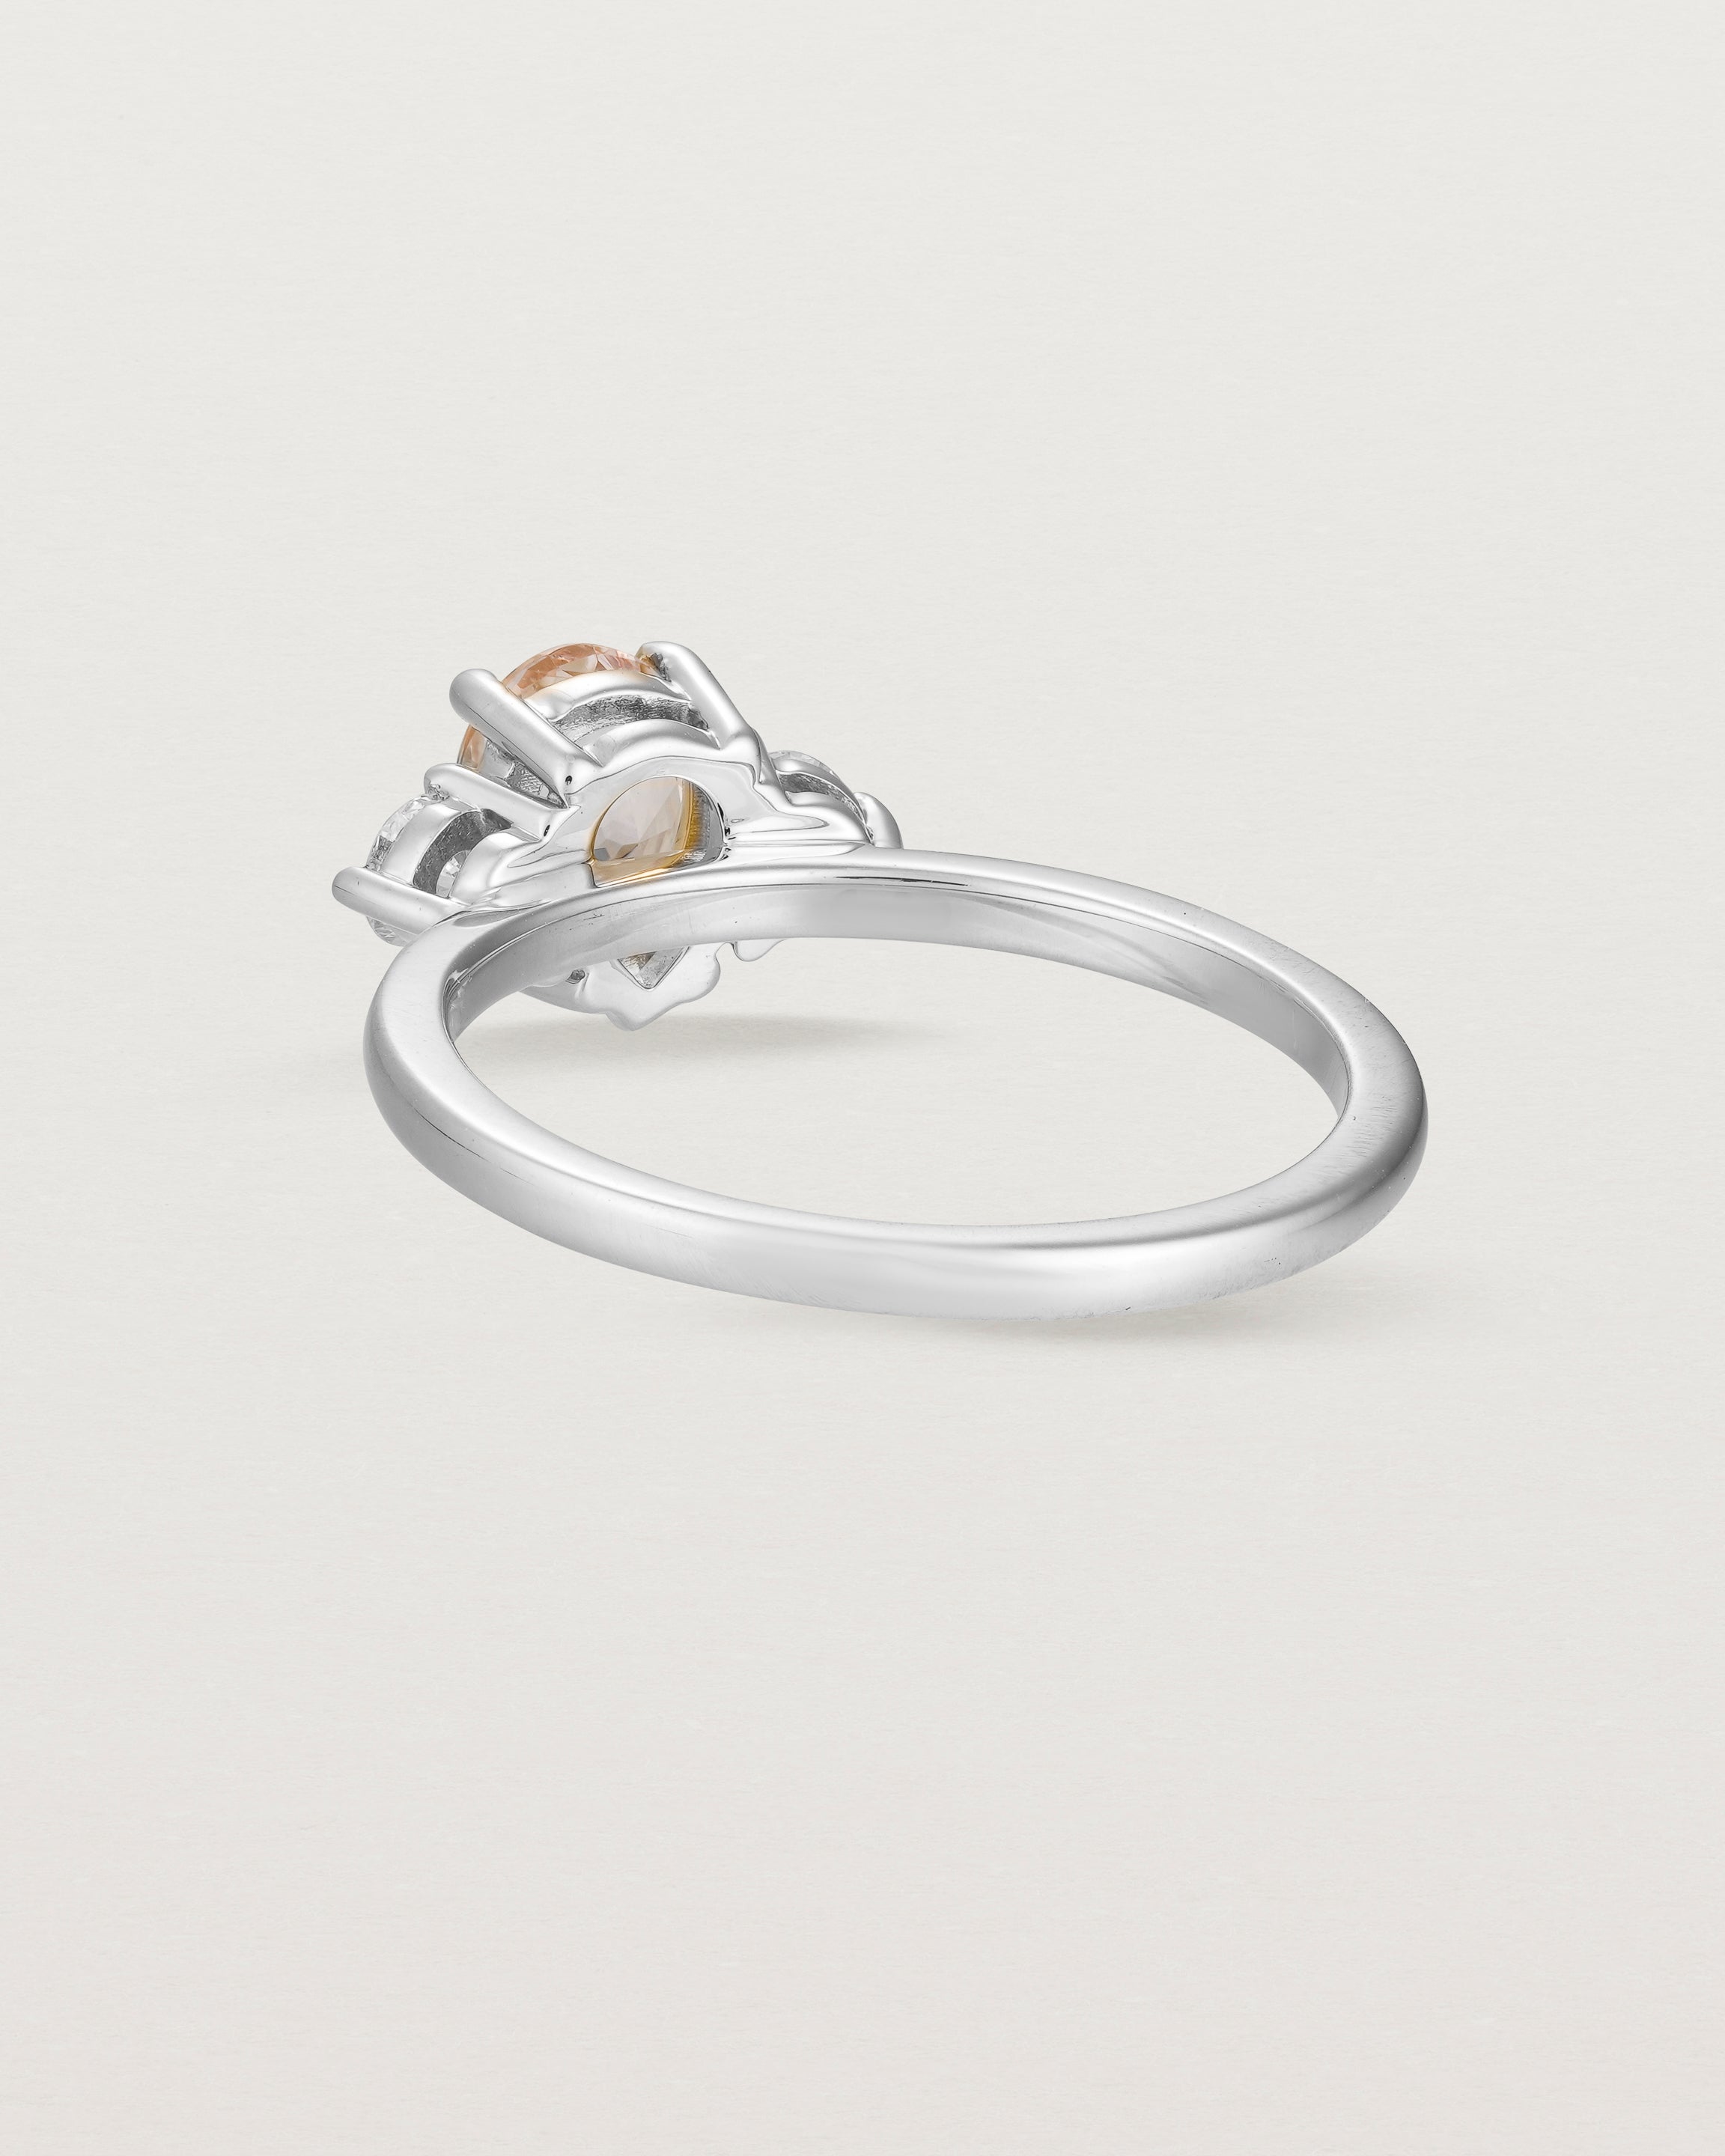 Back view of the Una Pear Trio Ring | Morganite & Diamonds | White Gold.